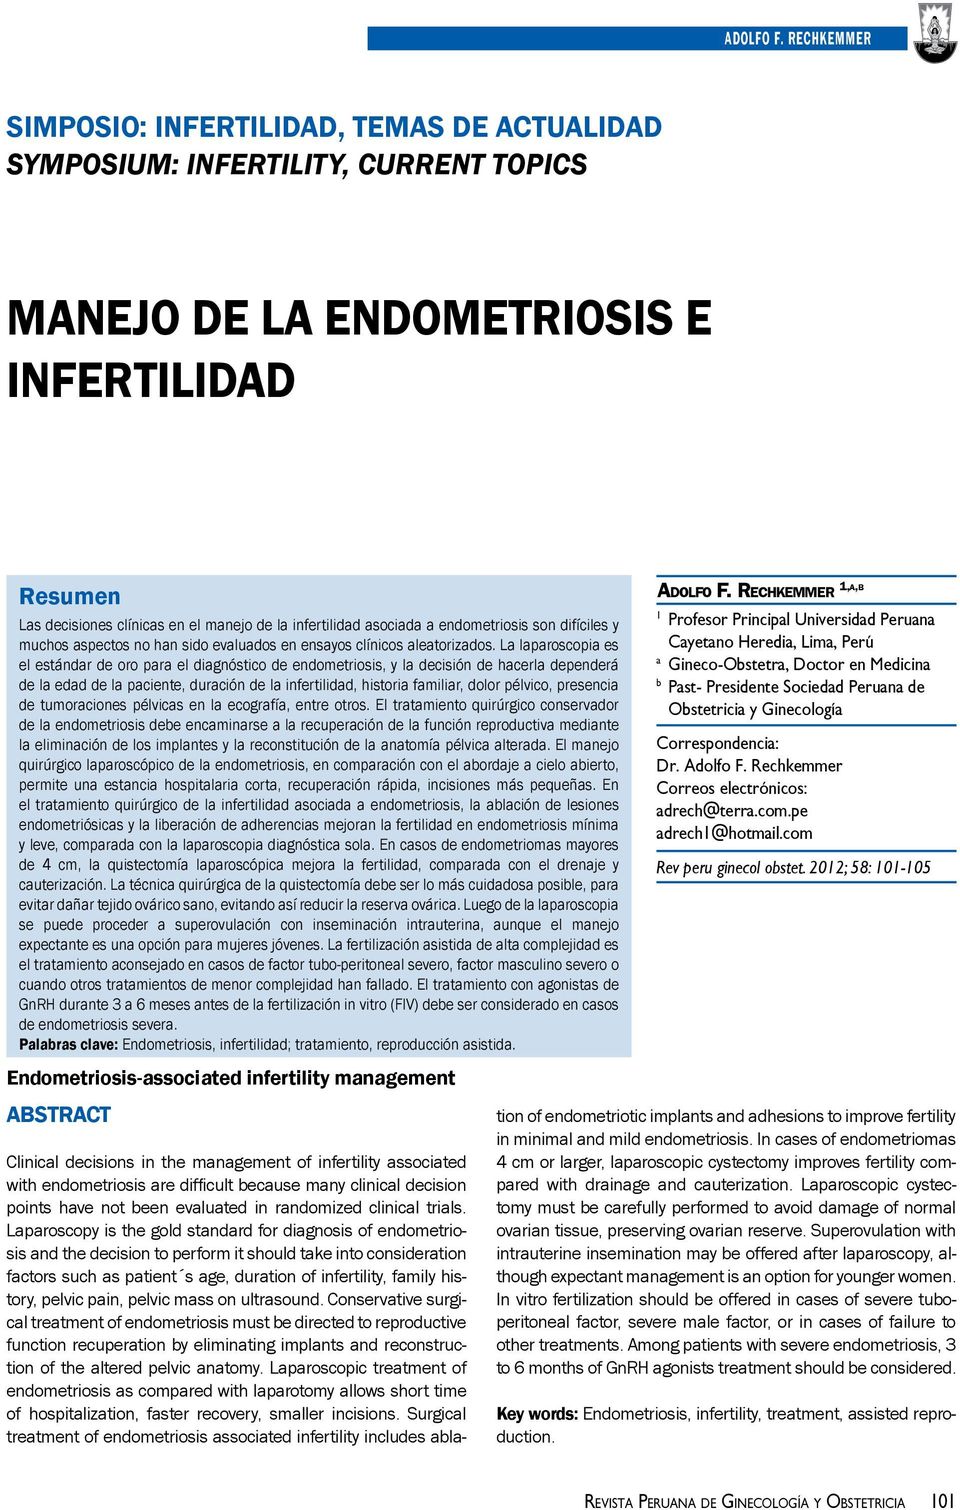 asociada a endometriosis son difíciles y muchos aspectos no han sido evaluados en ensayos clínicos aleatorizados.